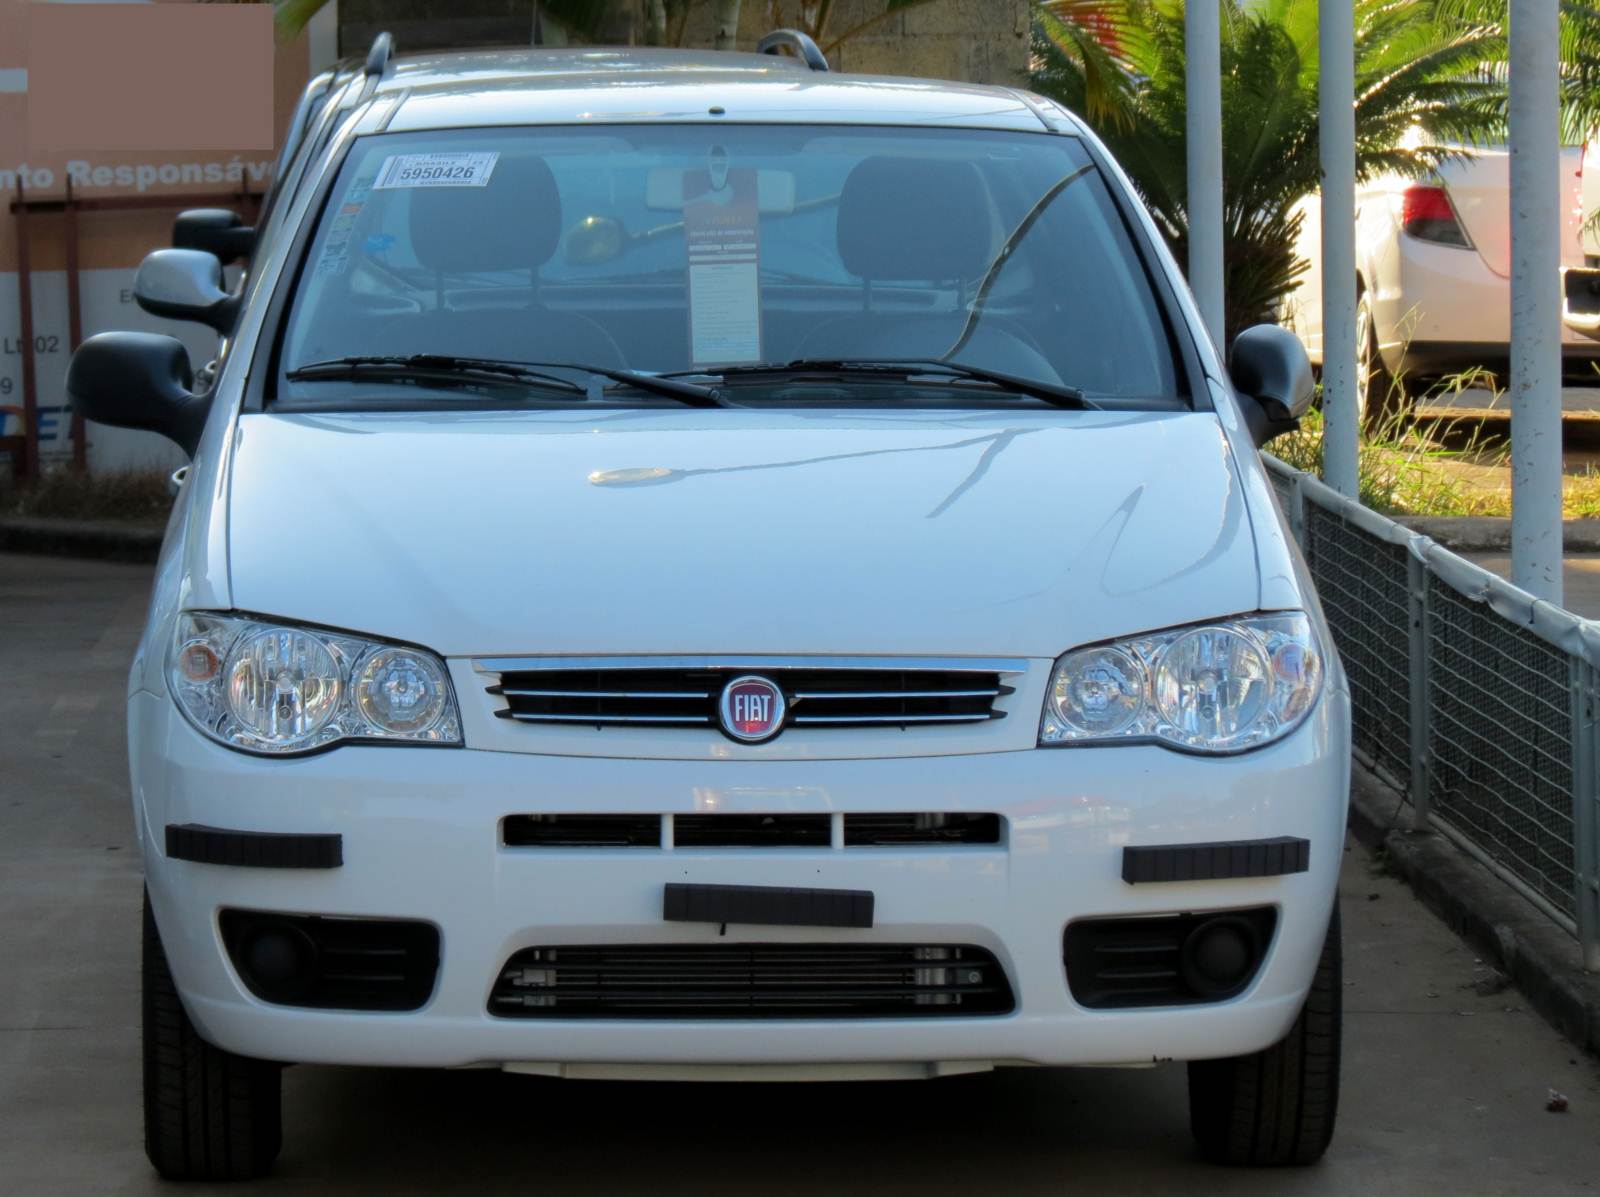 Fiat Palio - segundo carro mais vendido na América Latina